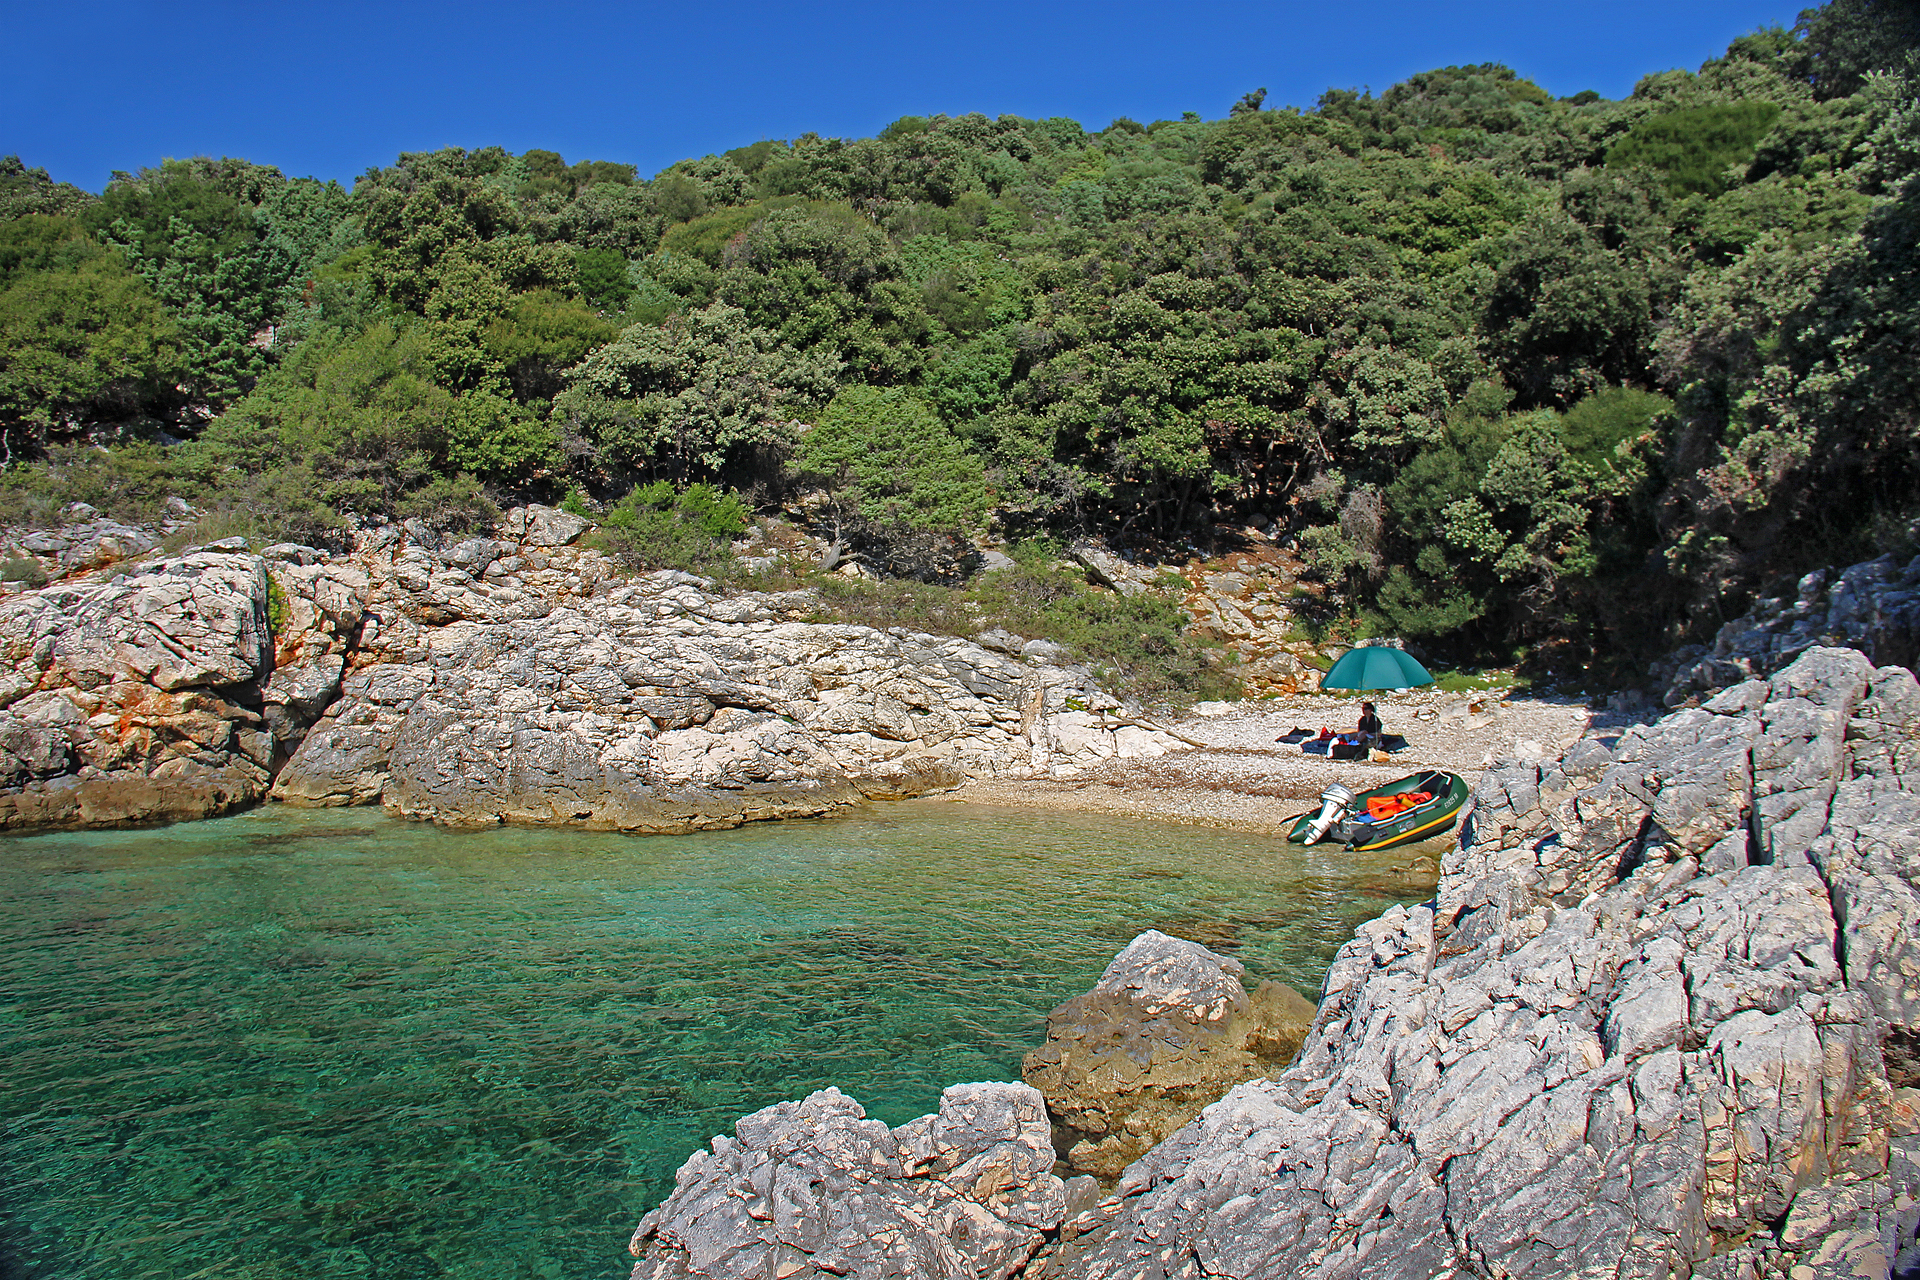 Bootsfahren und Angeln in Kroatien vom Schlauchboot